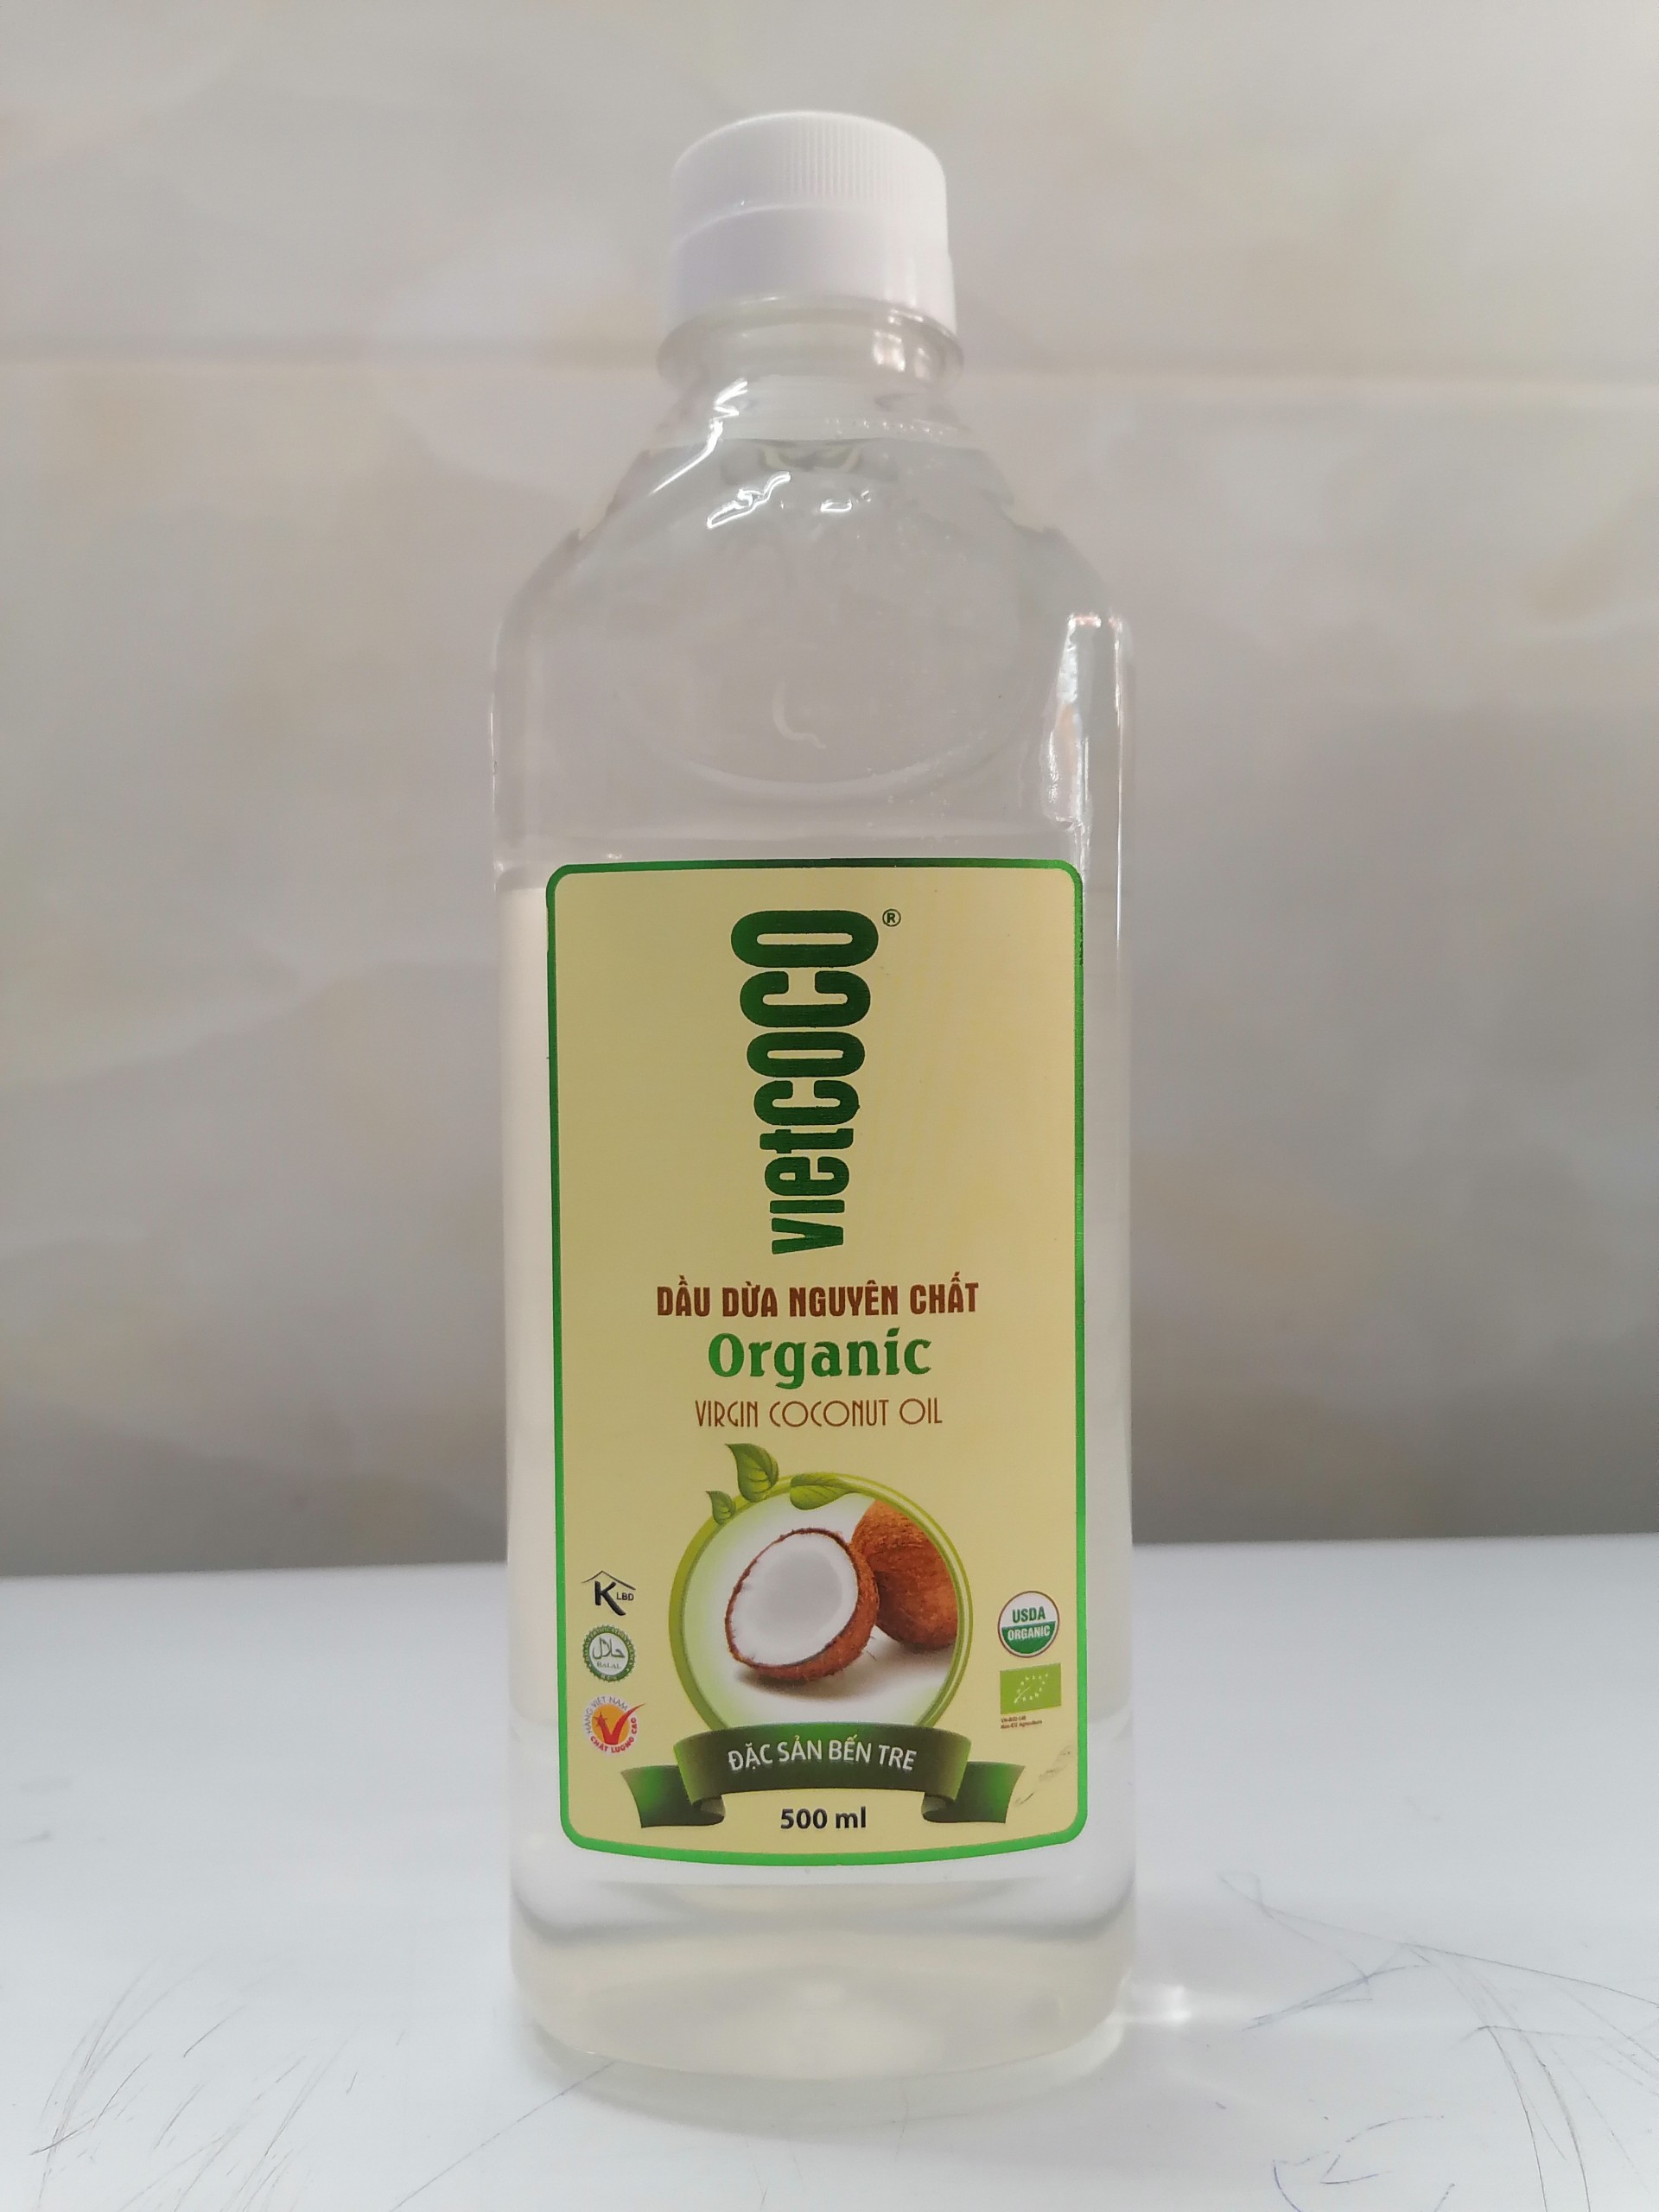 [500ml – Organic] Dầu dừa hữu cơ nguyên chất [VN] VIETCOCO Organic Virgin Coconut Oil (halal) (alc-hk)